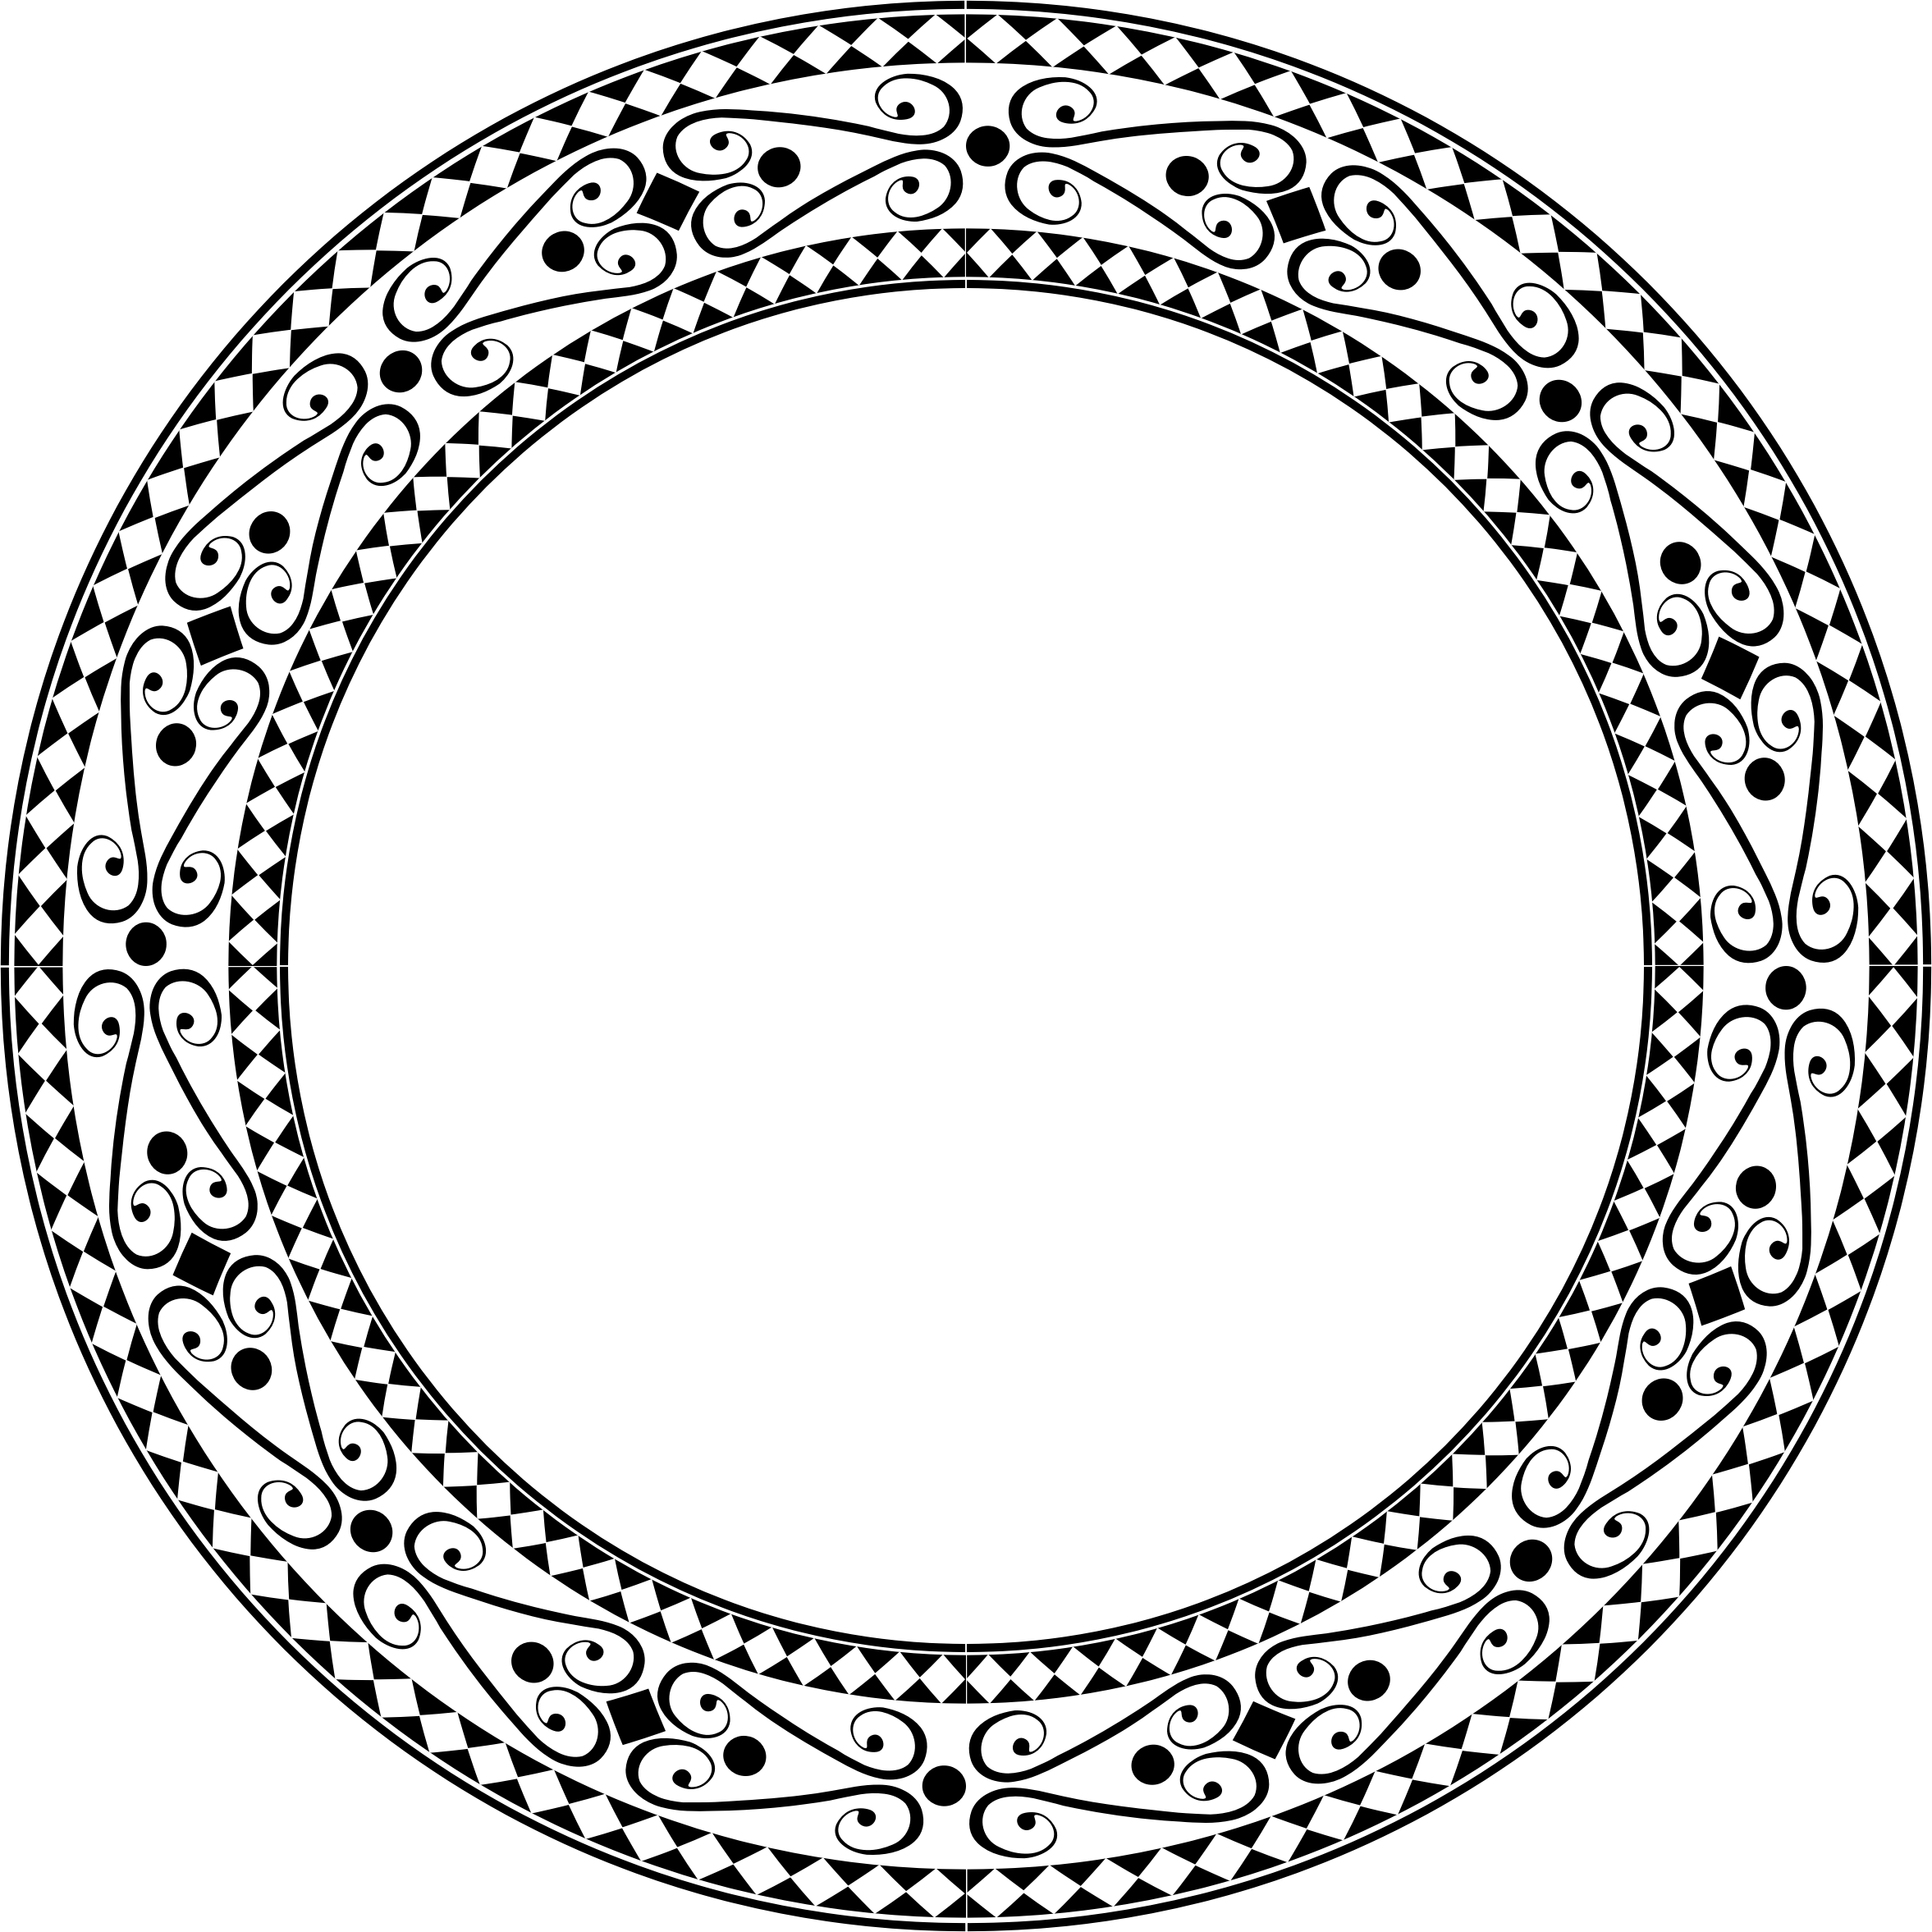 Cadre de cercle de vecteur PNG Image de fondchakra